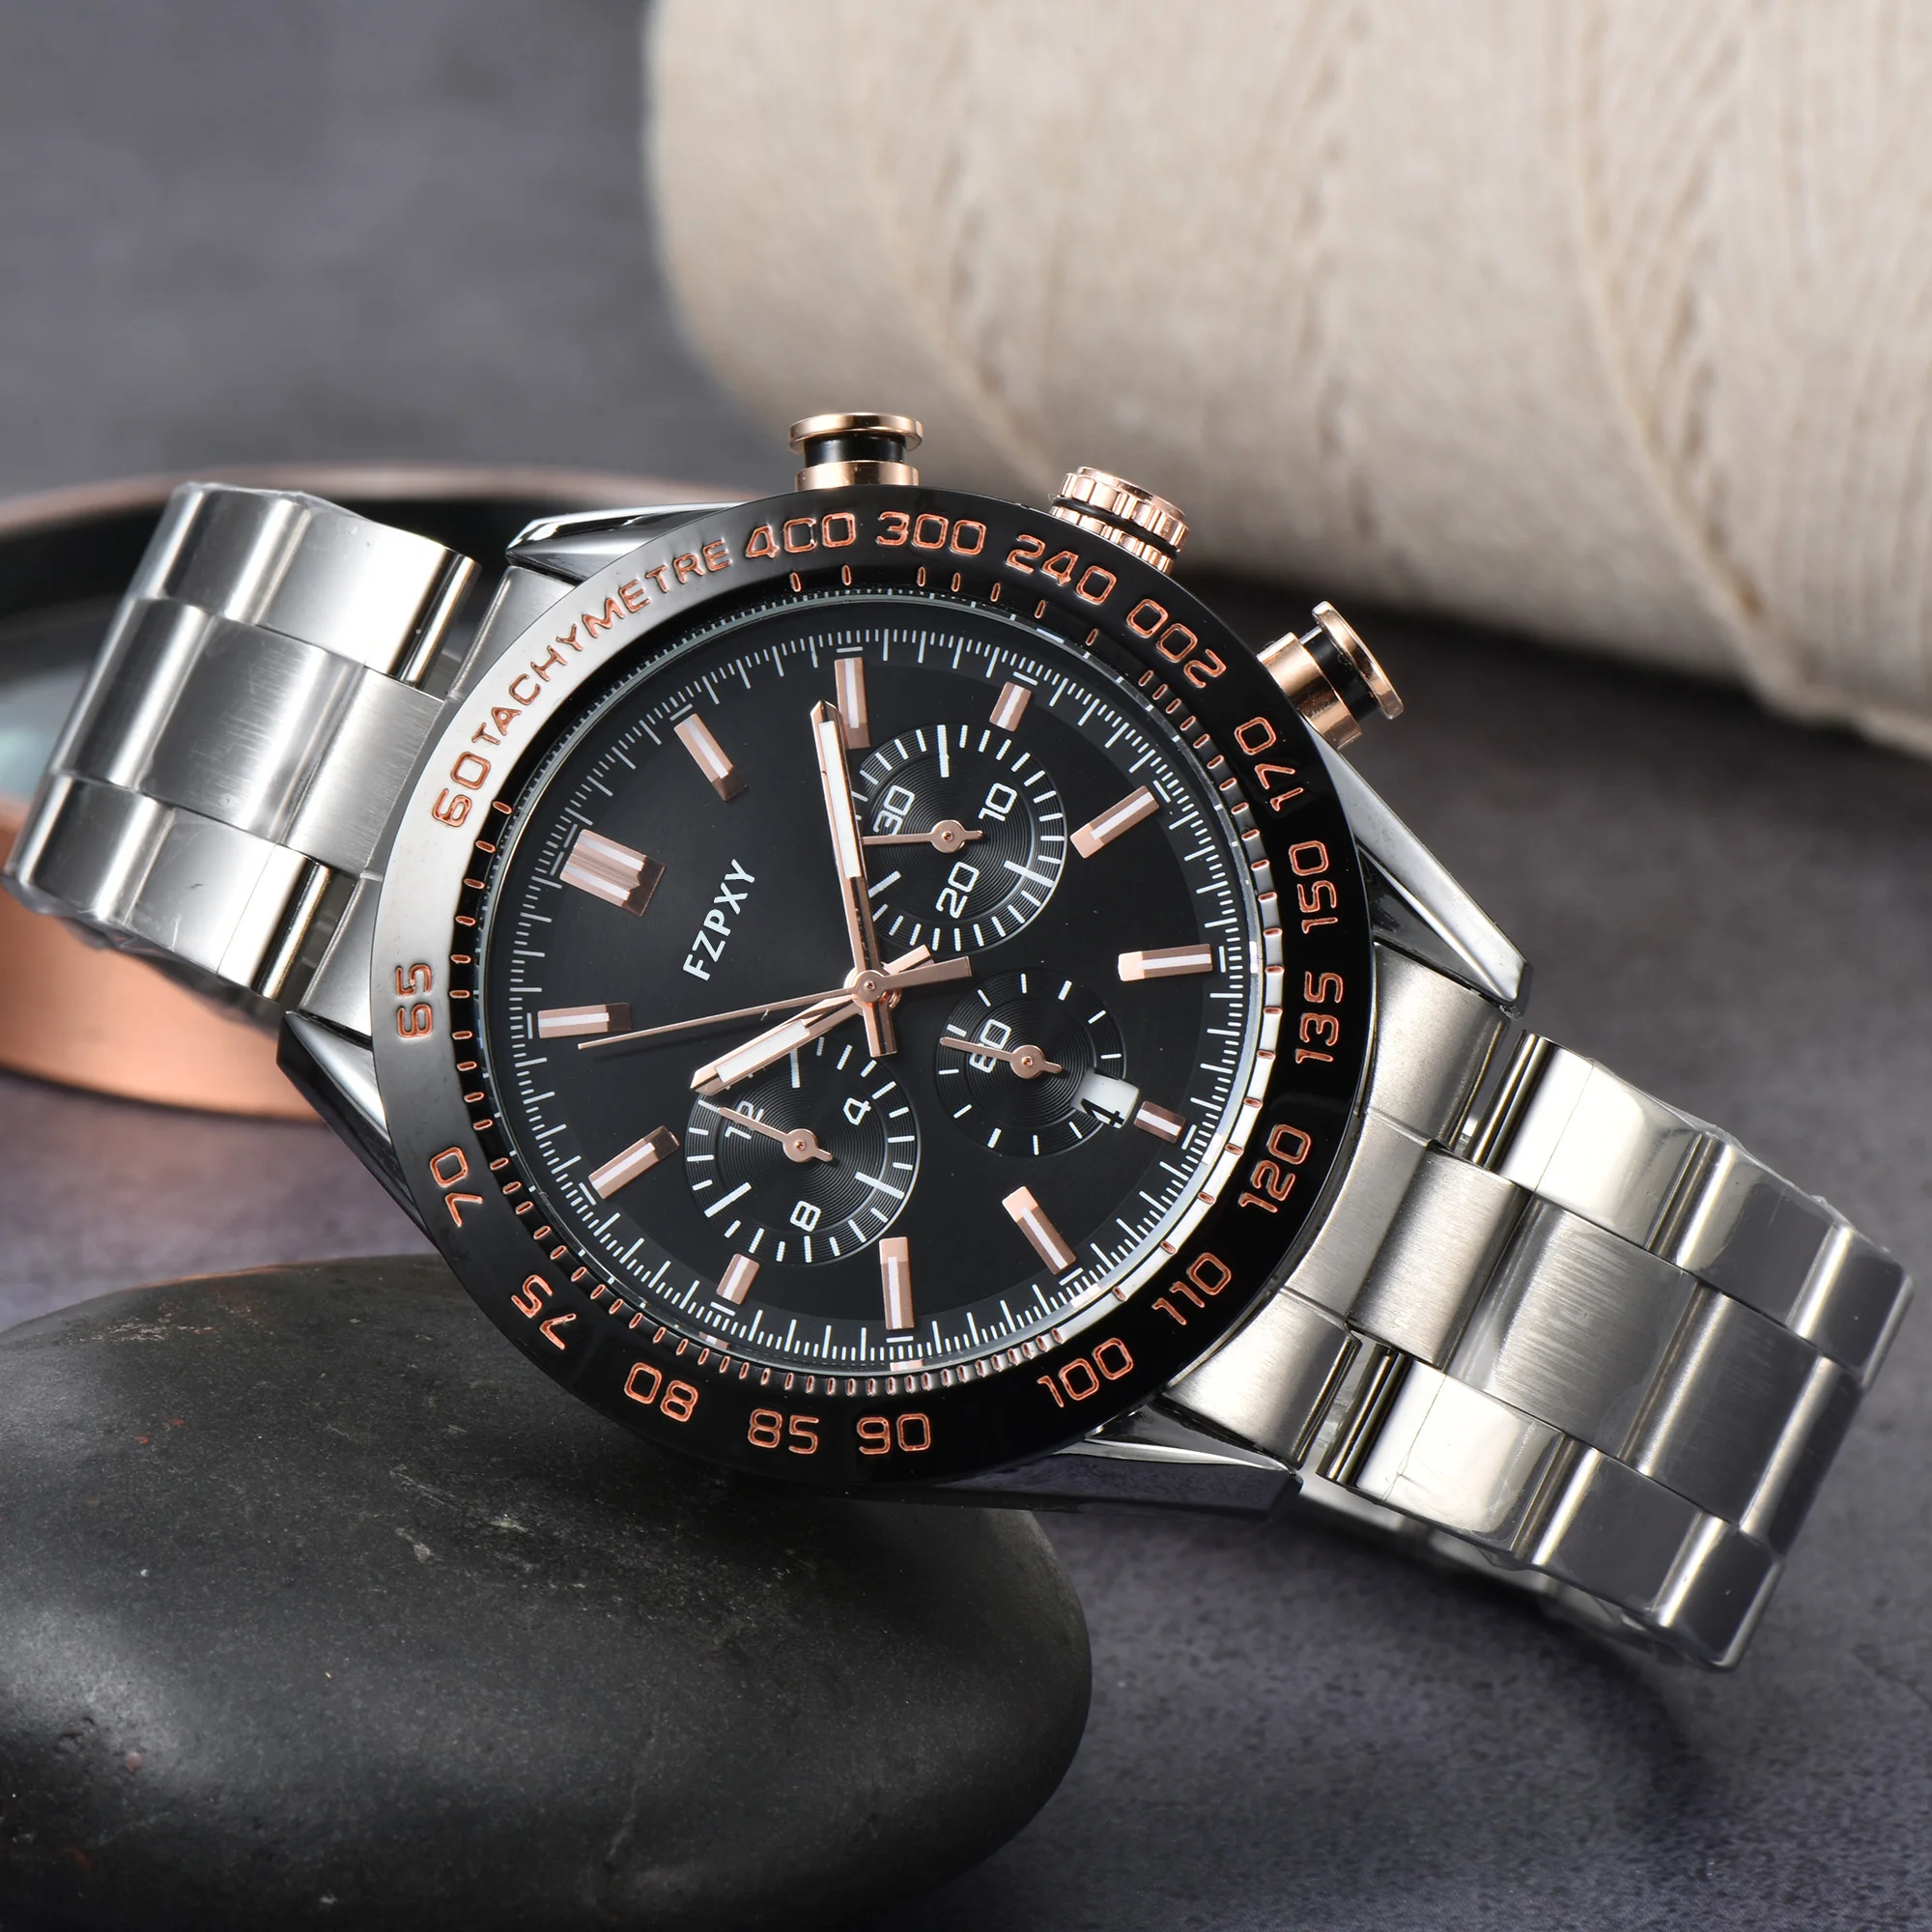 

Часы наручные TA113 мужские/женские с хронографом, брендовые многофункциональные классические стальные, в деловом стиле, ААА